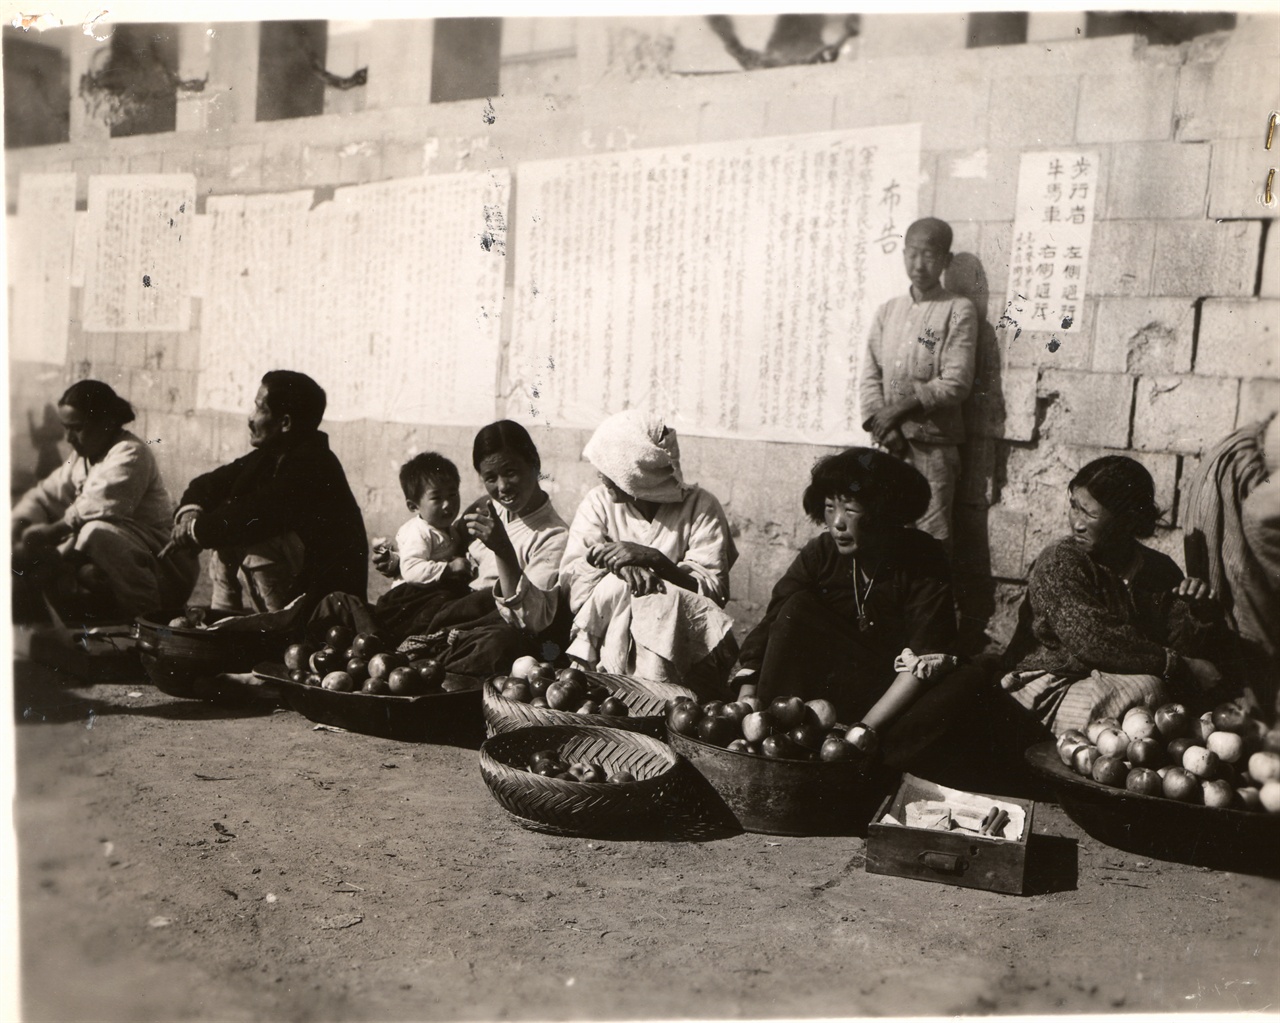  1950. 11. 1. 원산. 주민들이 광주리에 과일을 담아 거리에서 팔고 있다.